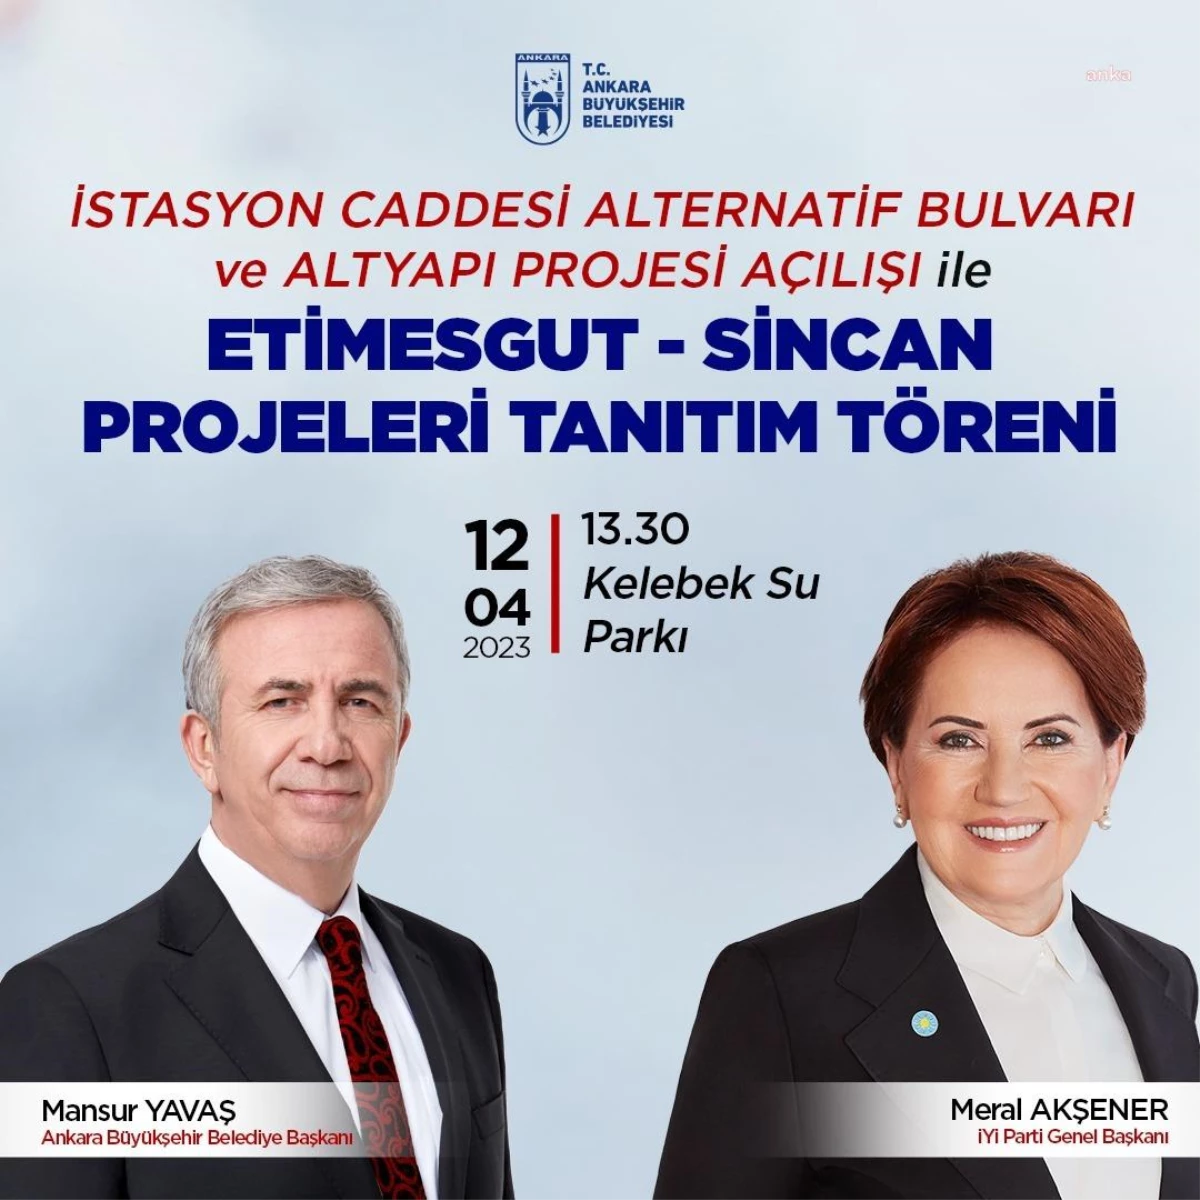 Ankara Büyükşehir Belediyesi Projelerinin Tanıtım ve Açılış Töreni, Yarın Mansur Yavaş ve Meral Akşener\'in Katılımıyla Yapılacak